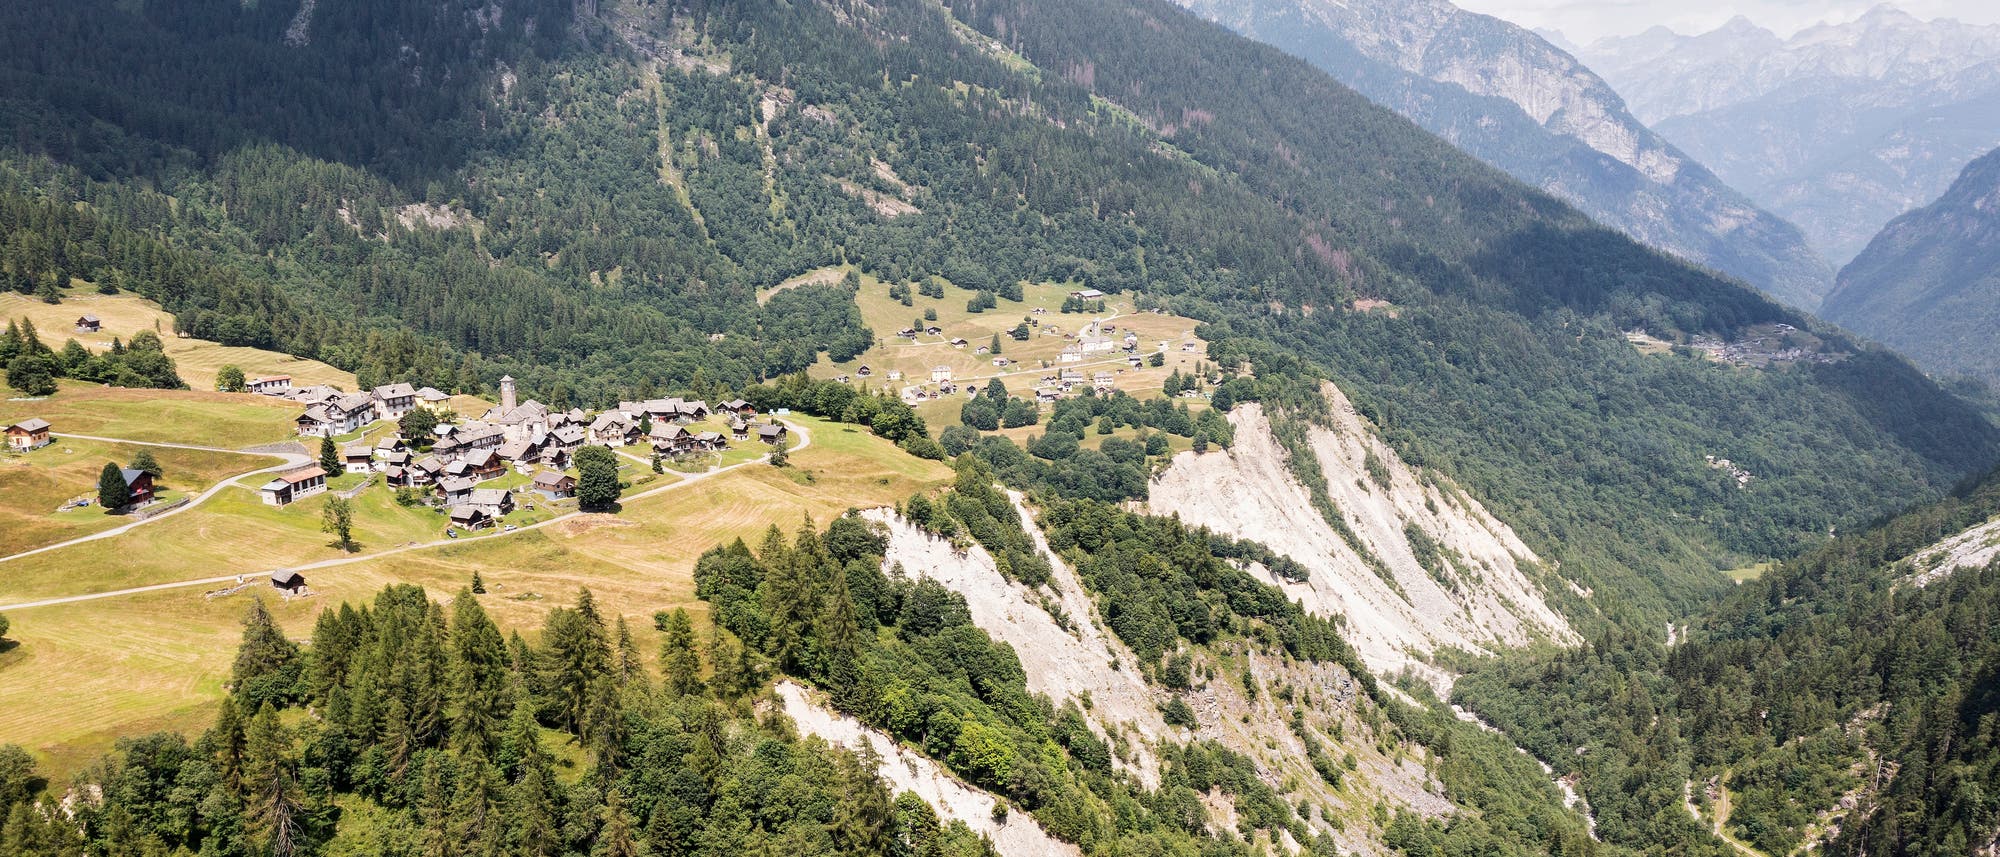 Das Dorf Campo in Vallemaggia, Tessin, drohte einst ins Tal zu rutschen